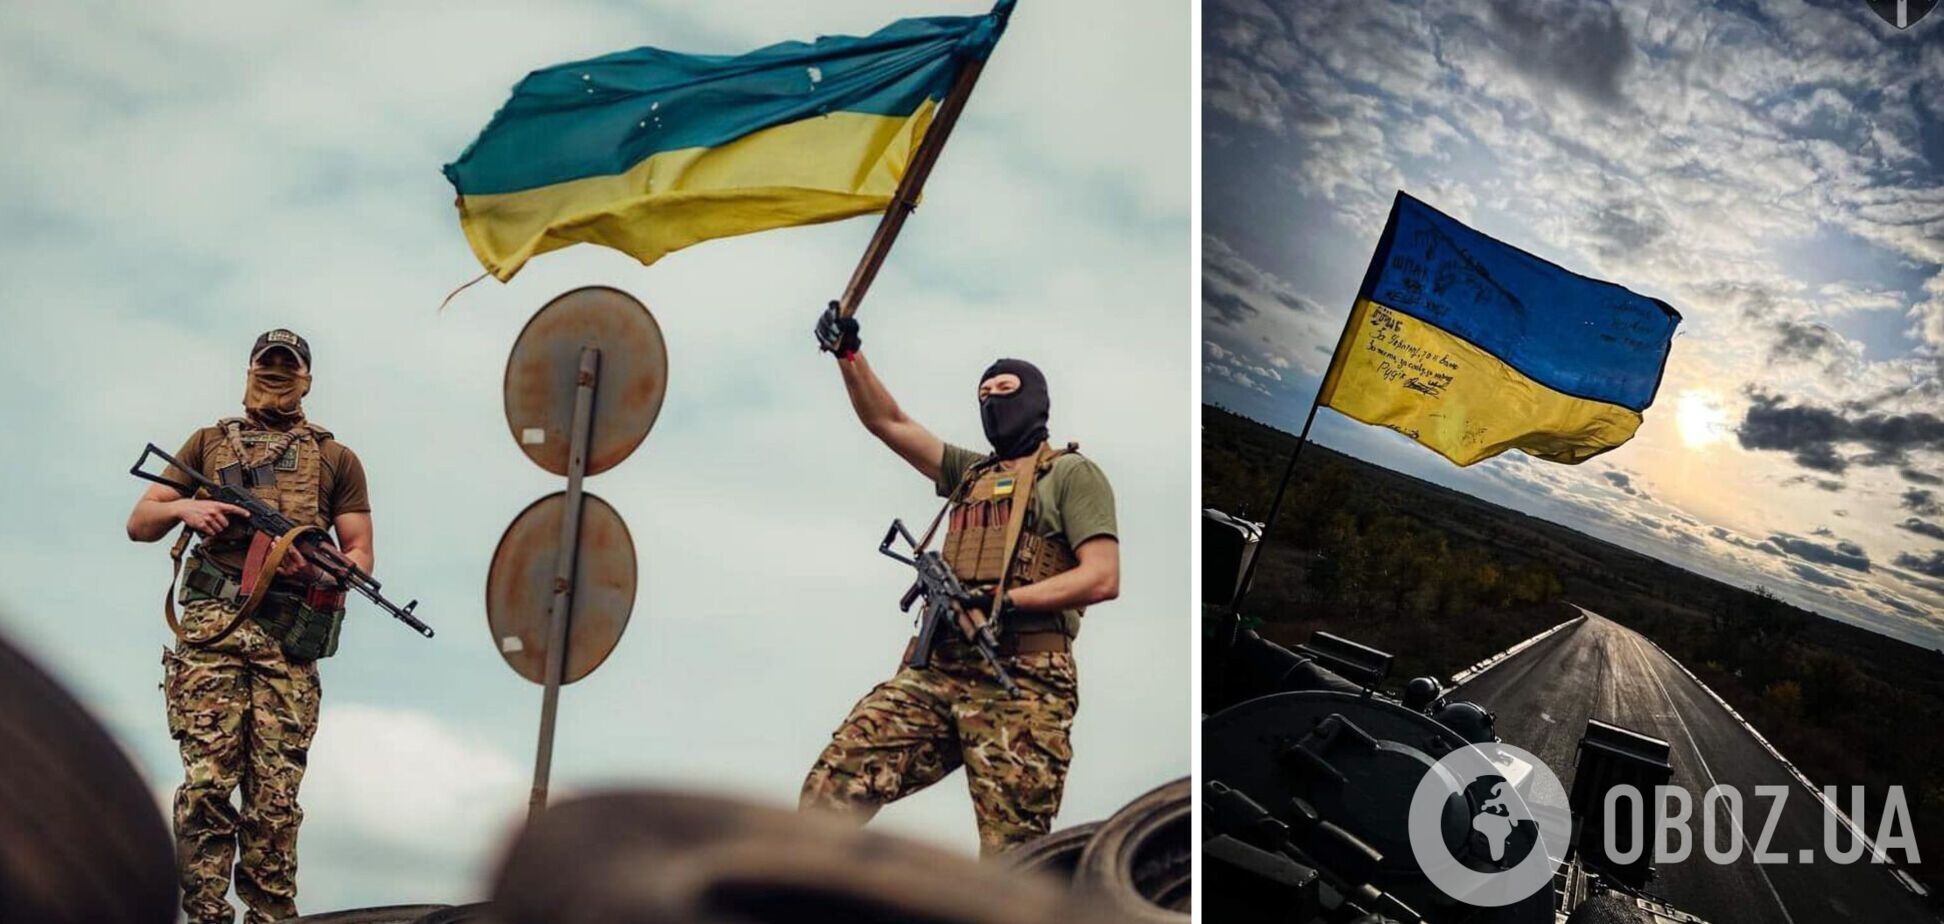 Чи народна йде війна? Скільки українці донатять на ЗСУ